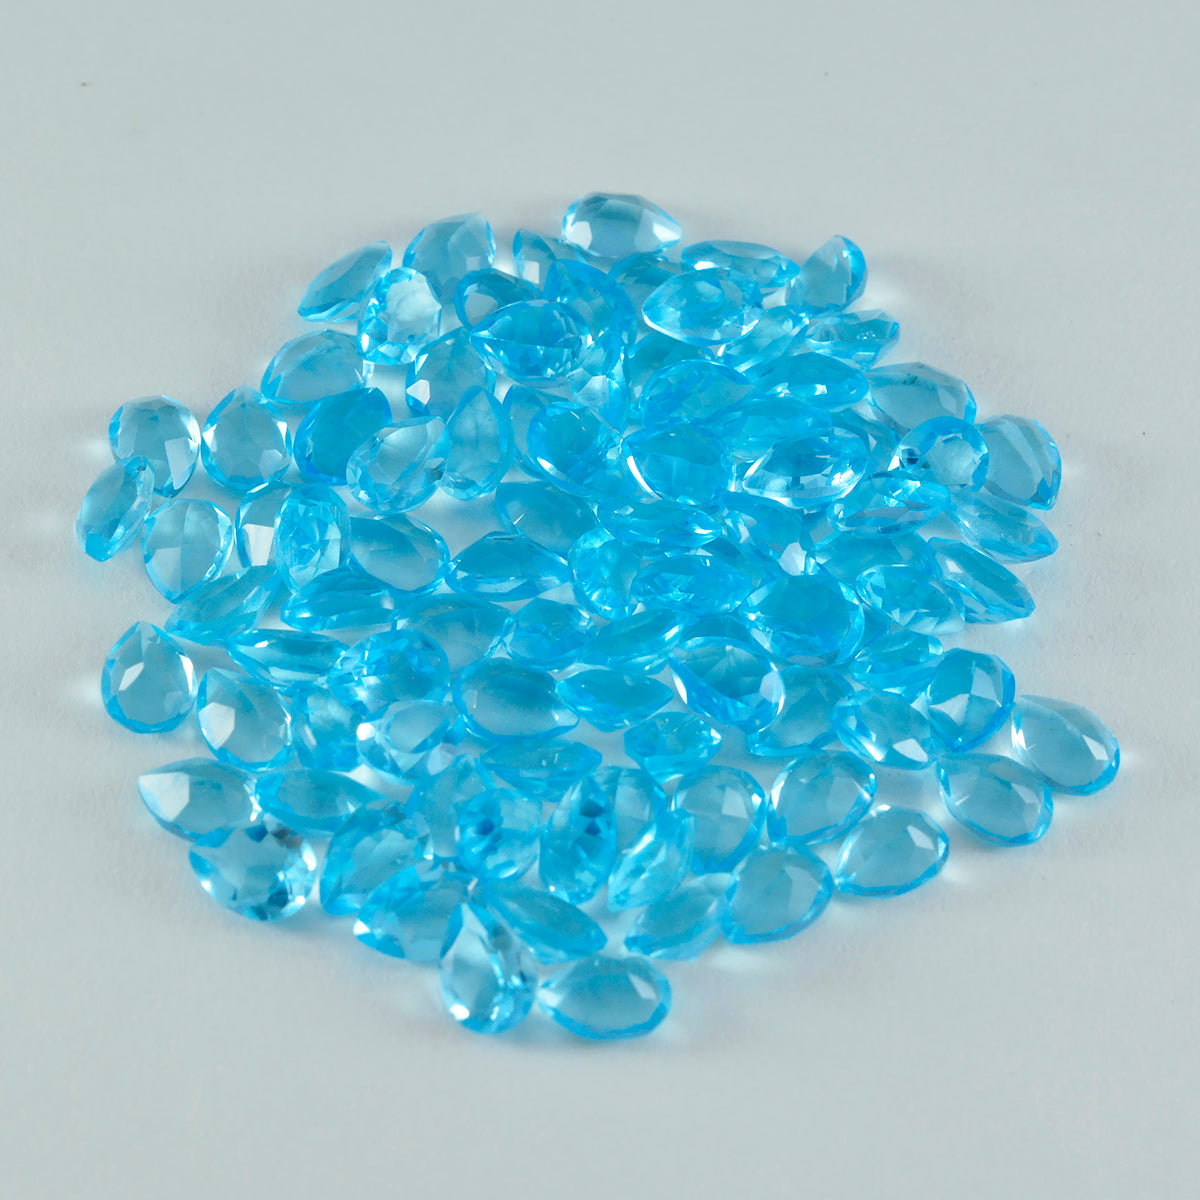 riyogems 1шт голубой топаз cz ограненный 3х5 мм драгоценные камни грушевидной формы отличного качества